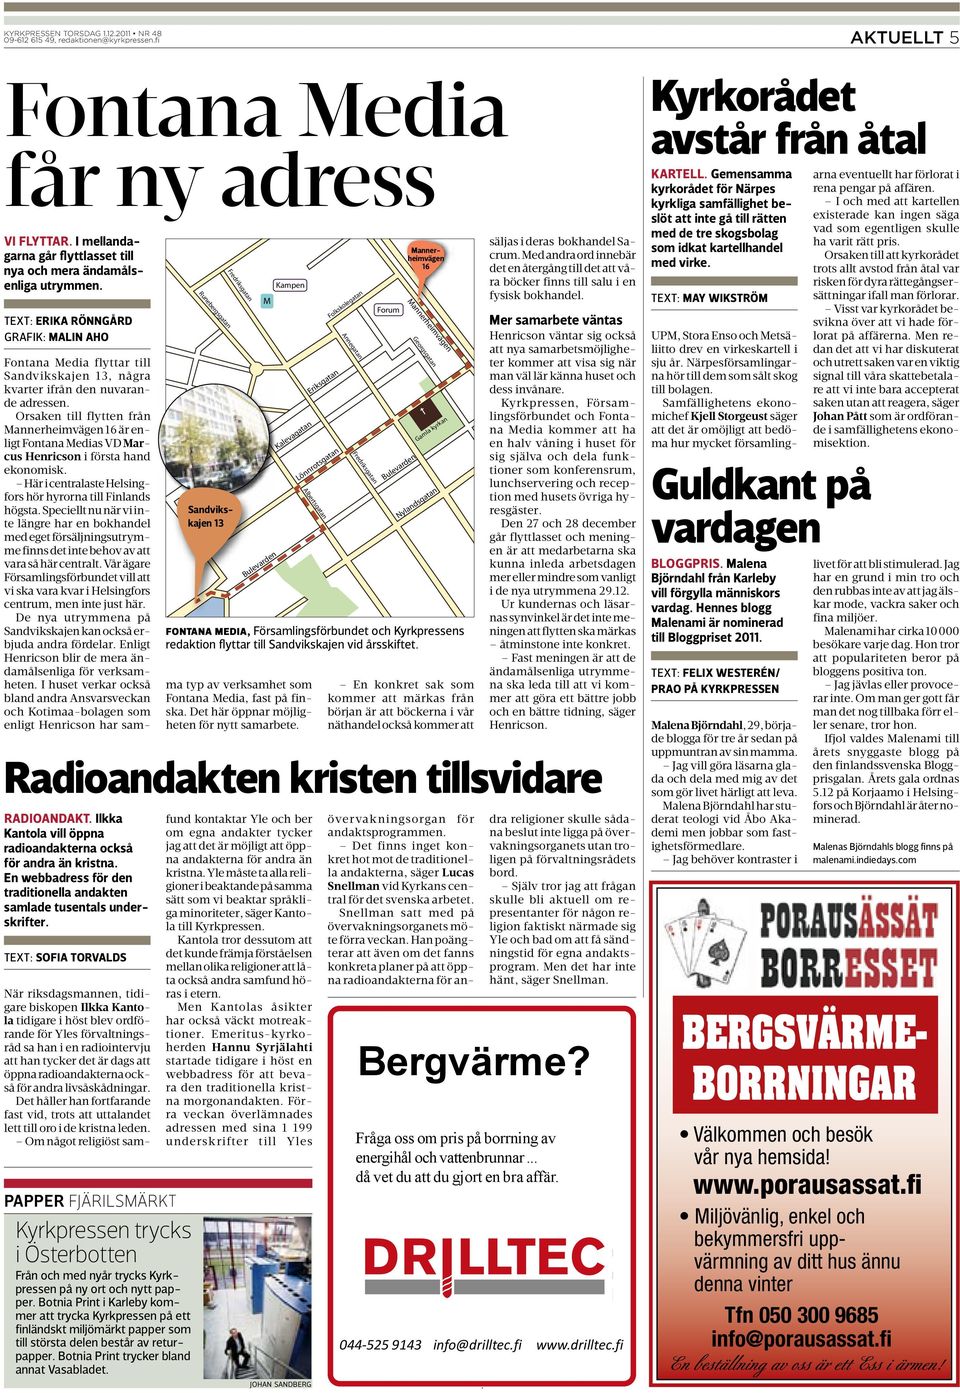 Fontana Media flyttar till Sandvikskajen 13, några kvarter ifrån den nuvarande adressen.